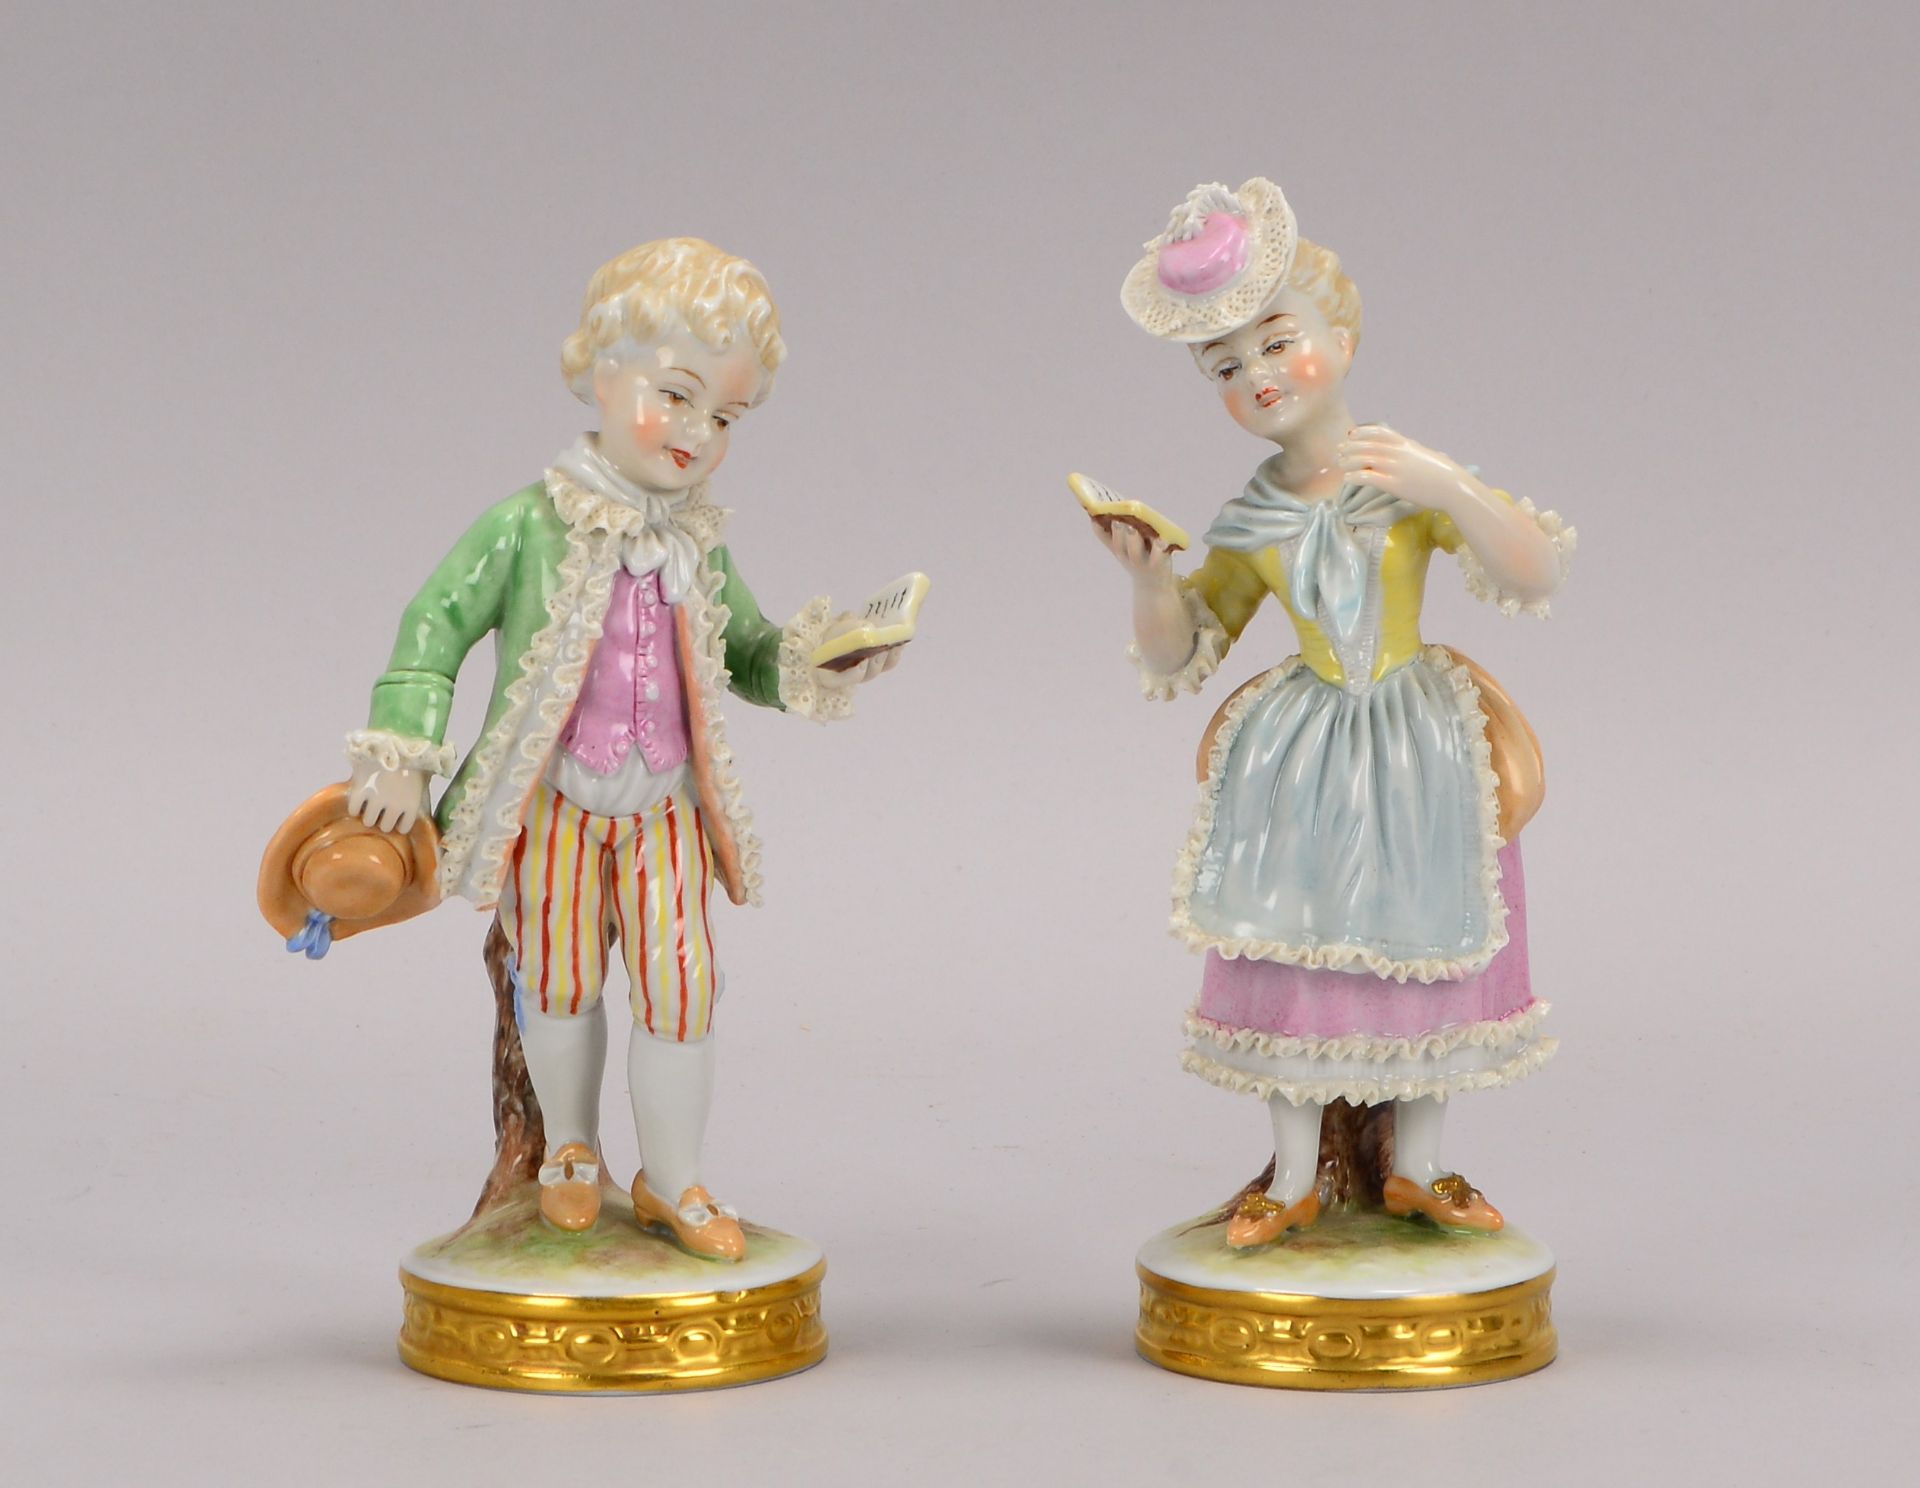 Unterweissbach, 2 Porzellanfiguren, -Kosendes Paar-, Hoehe 17 cm, und Hoehe 17,5 cm (Figuren mit kle